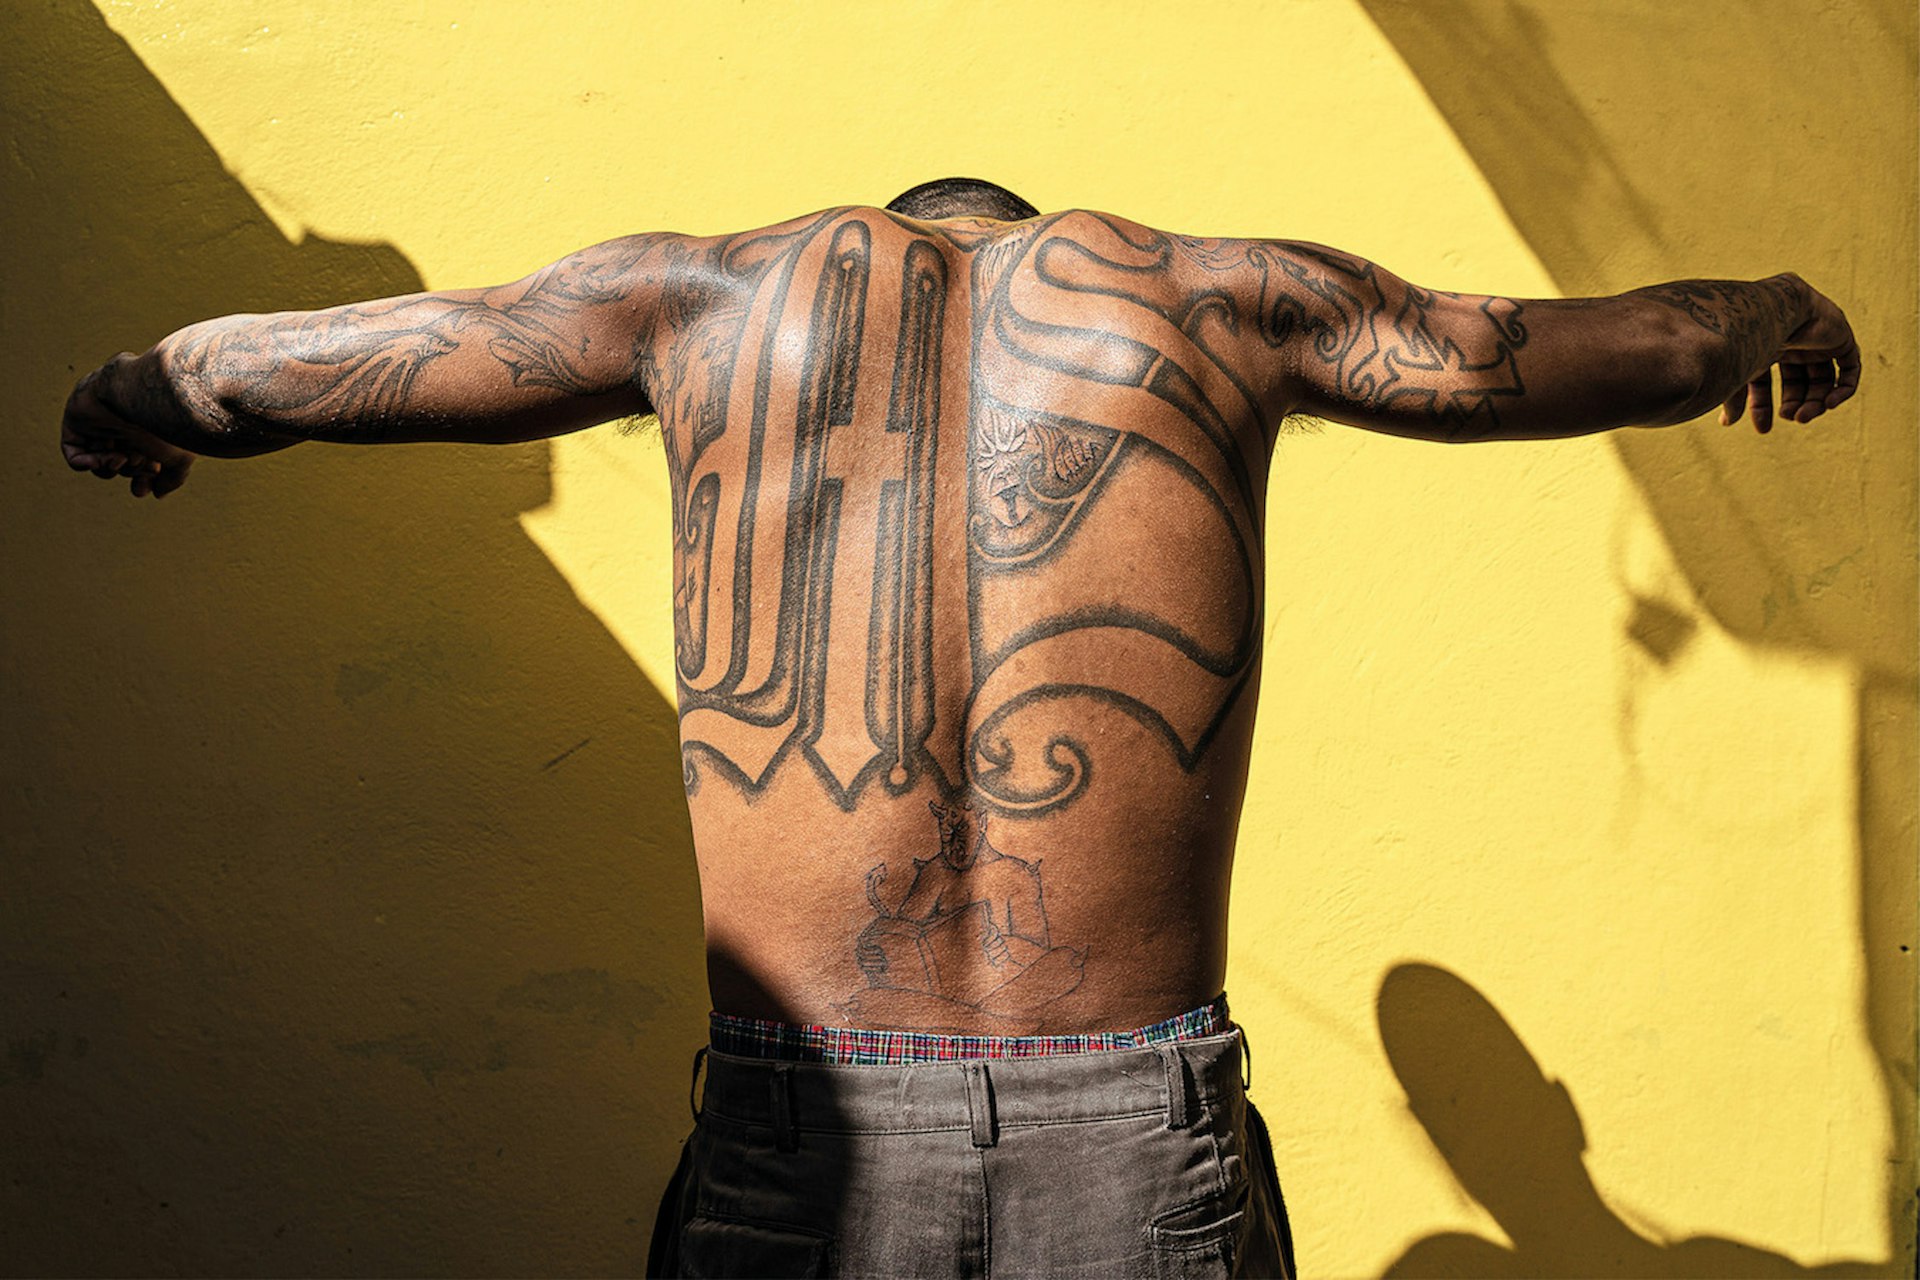 A brutal portrait of gang culture in El Salvador